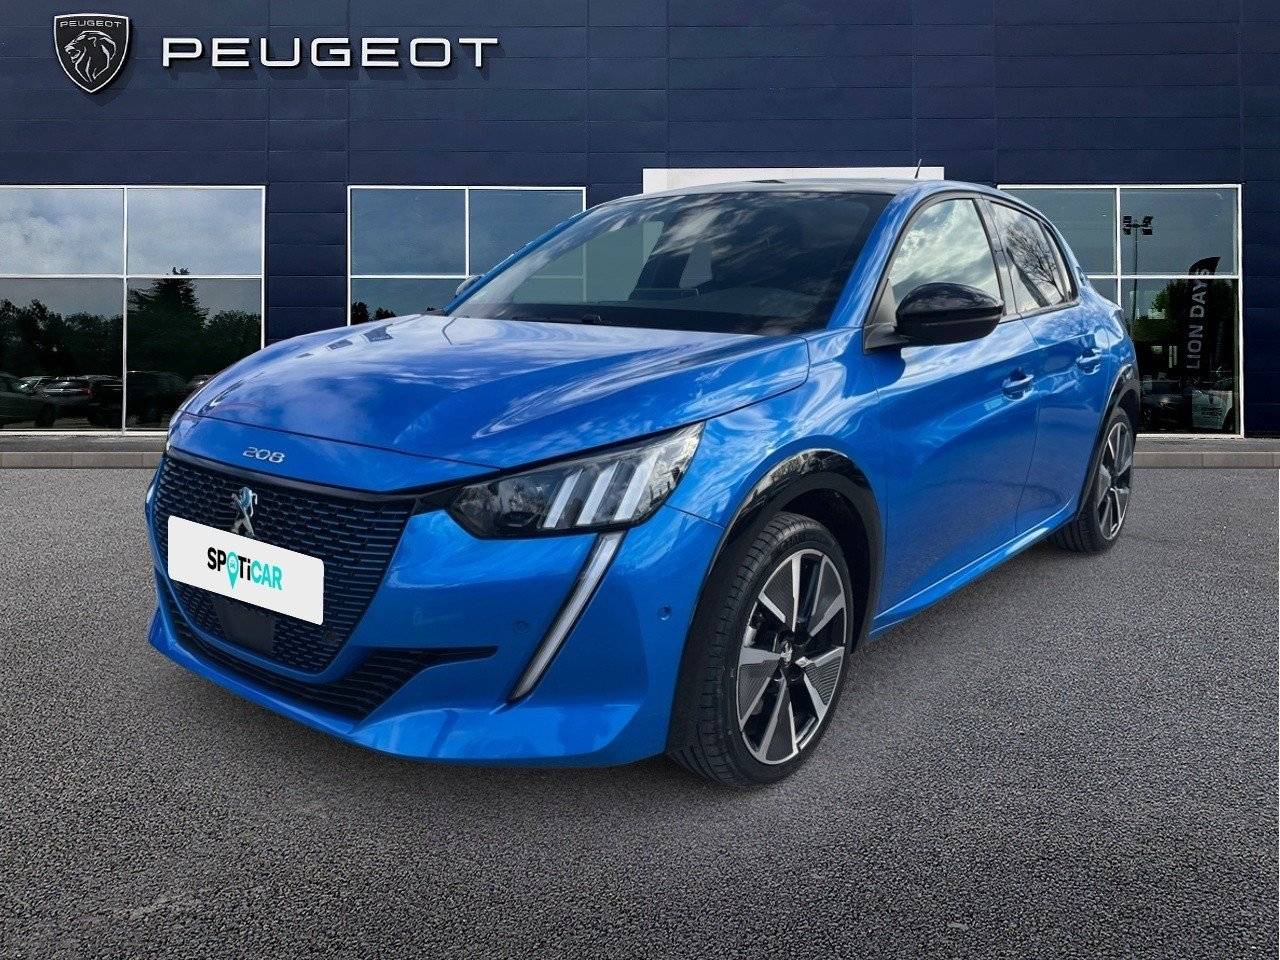 PEUGEOT 208 | 208 Electrique 50 kWh 136ch occasion - Peugeot Pertuis